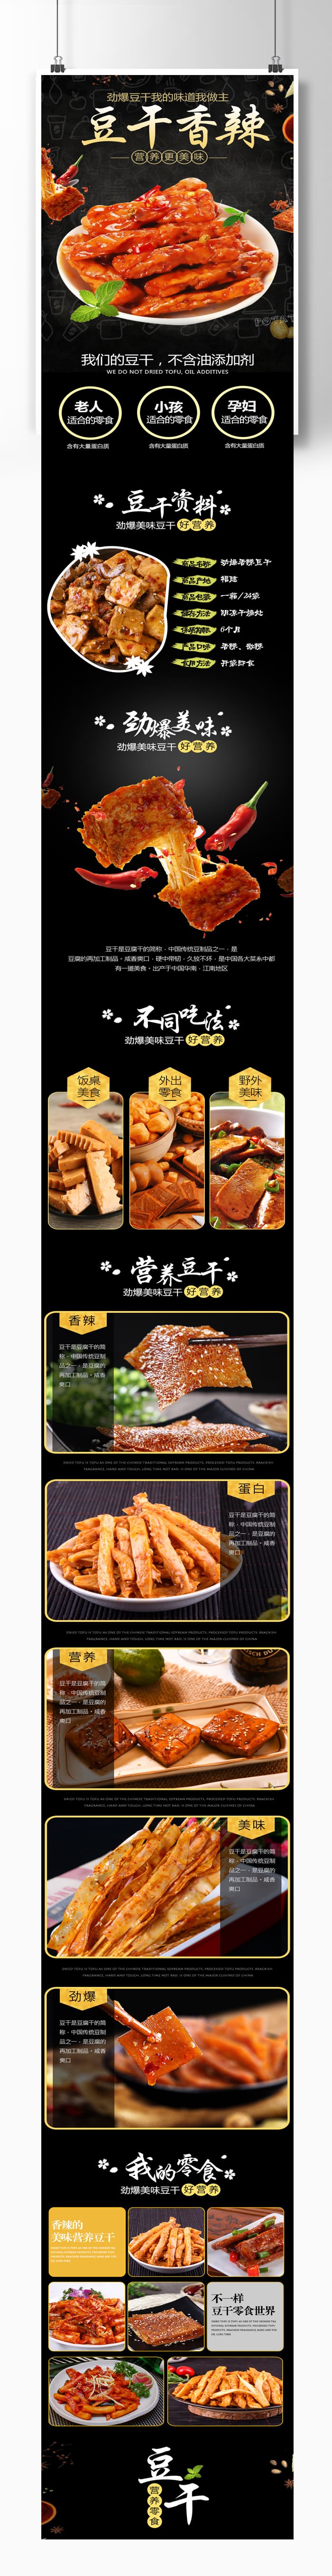 麻辣豆腐干食品详情页设计